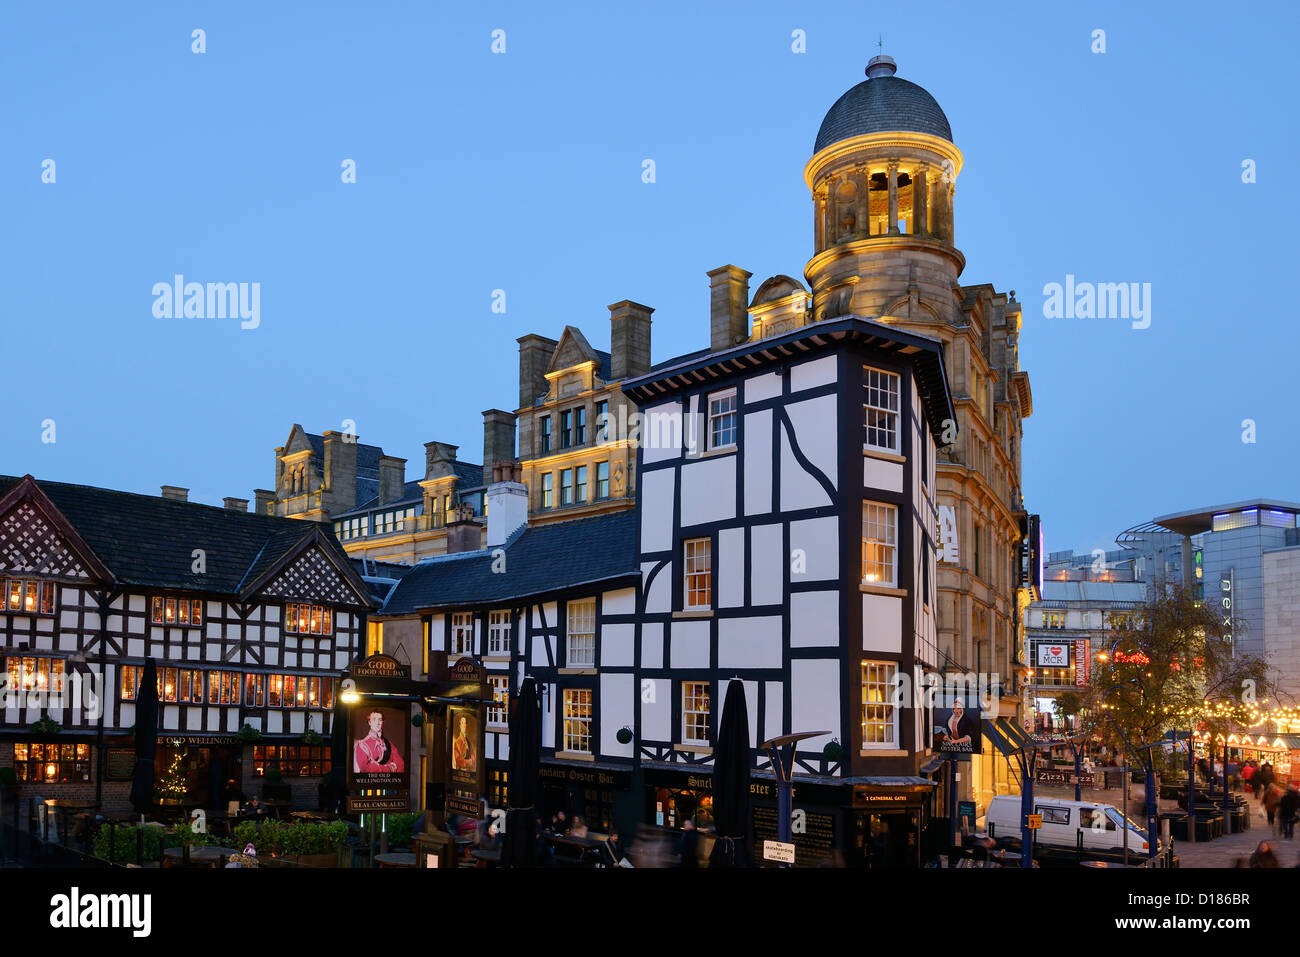 L'ancien pub Wellington et Sinclairs Oyster Bar en face de la halle au blé dans le centre-ville de Manchester Banque D'Images